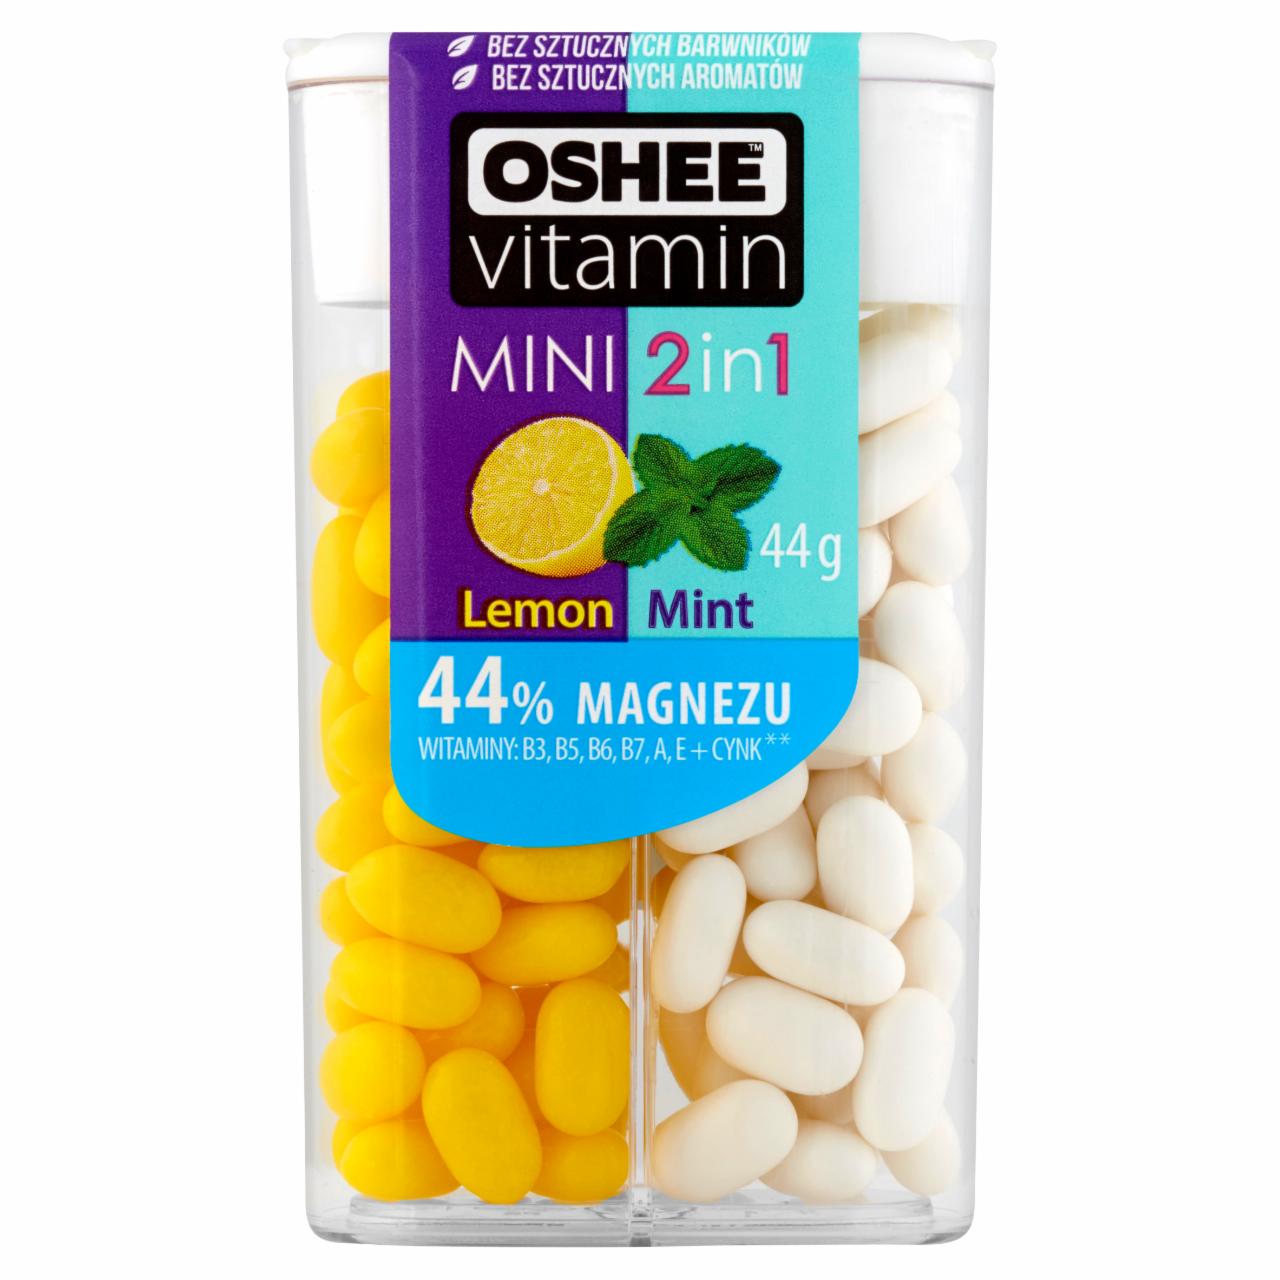 Zdjęcia - Oshee Vitamin Mini 2in1 Drażetki o smaku cytrynowym i miętowym 44 g